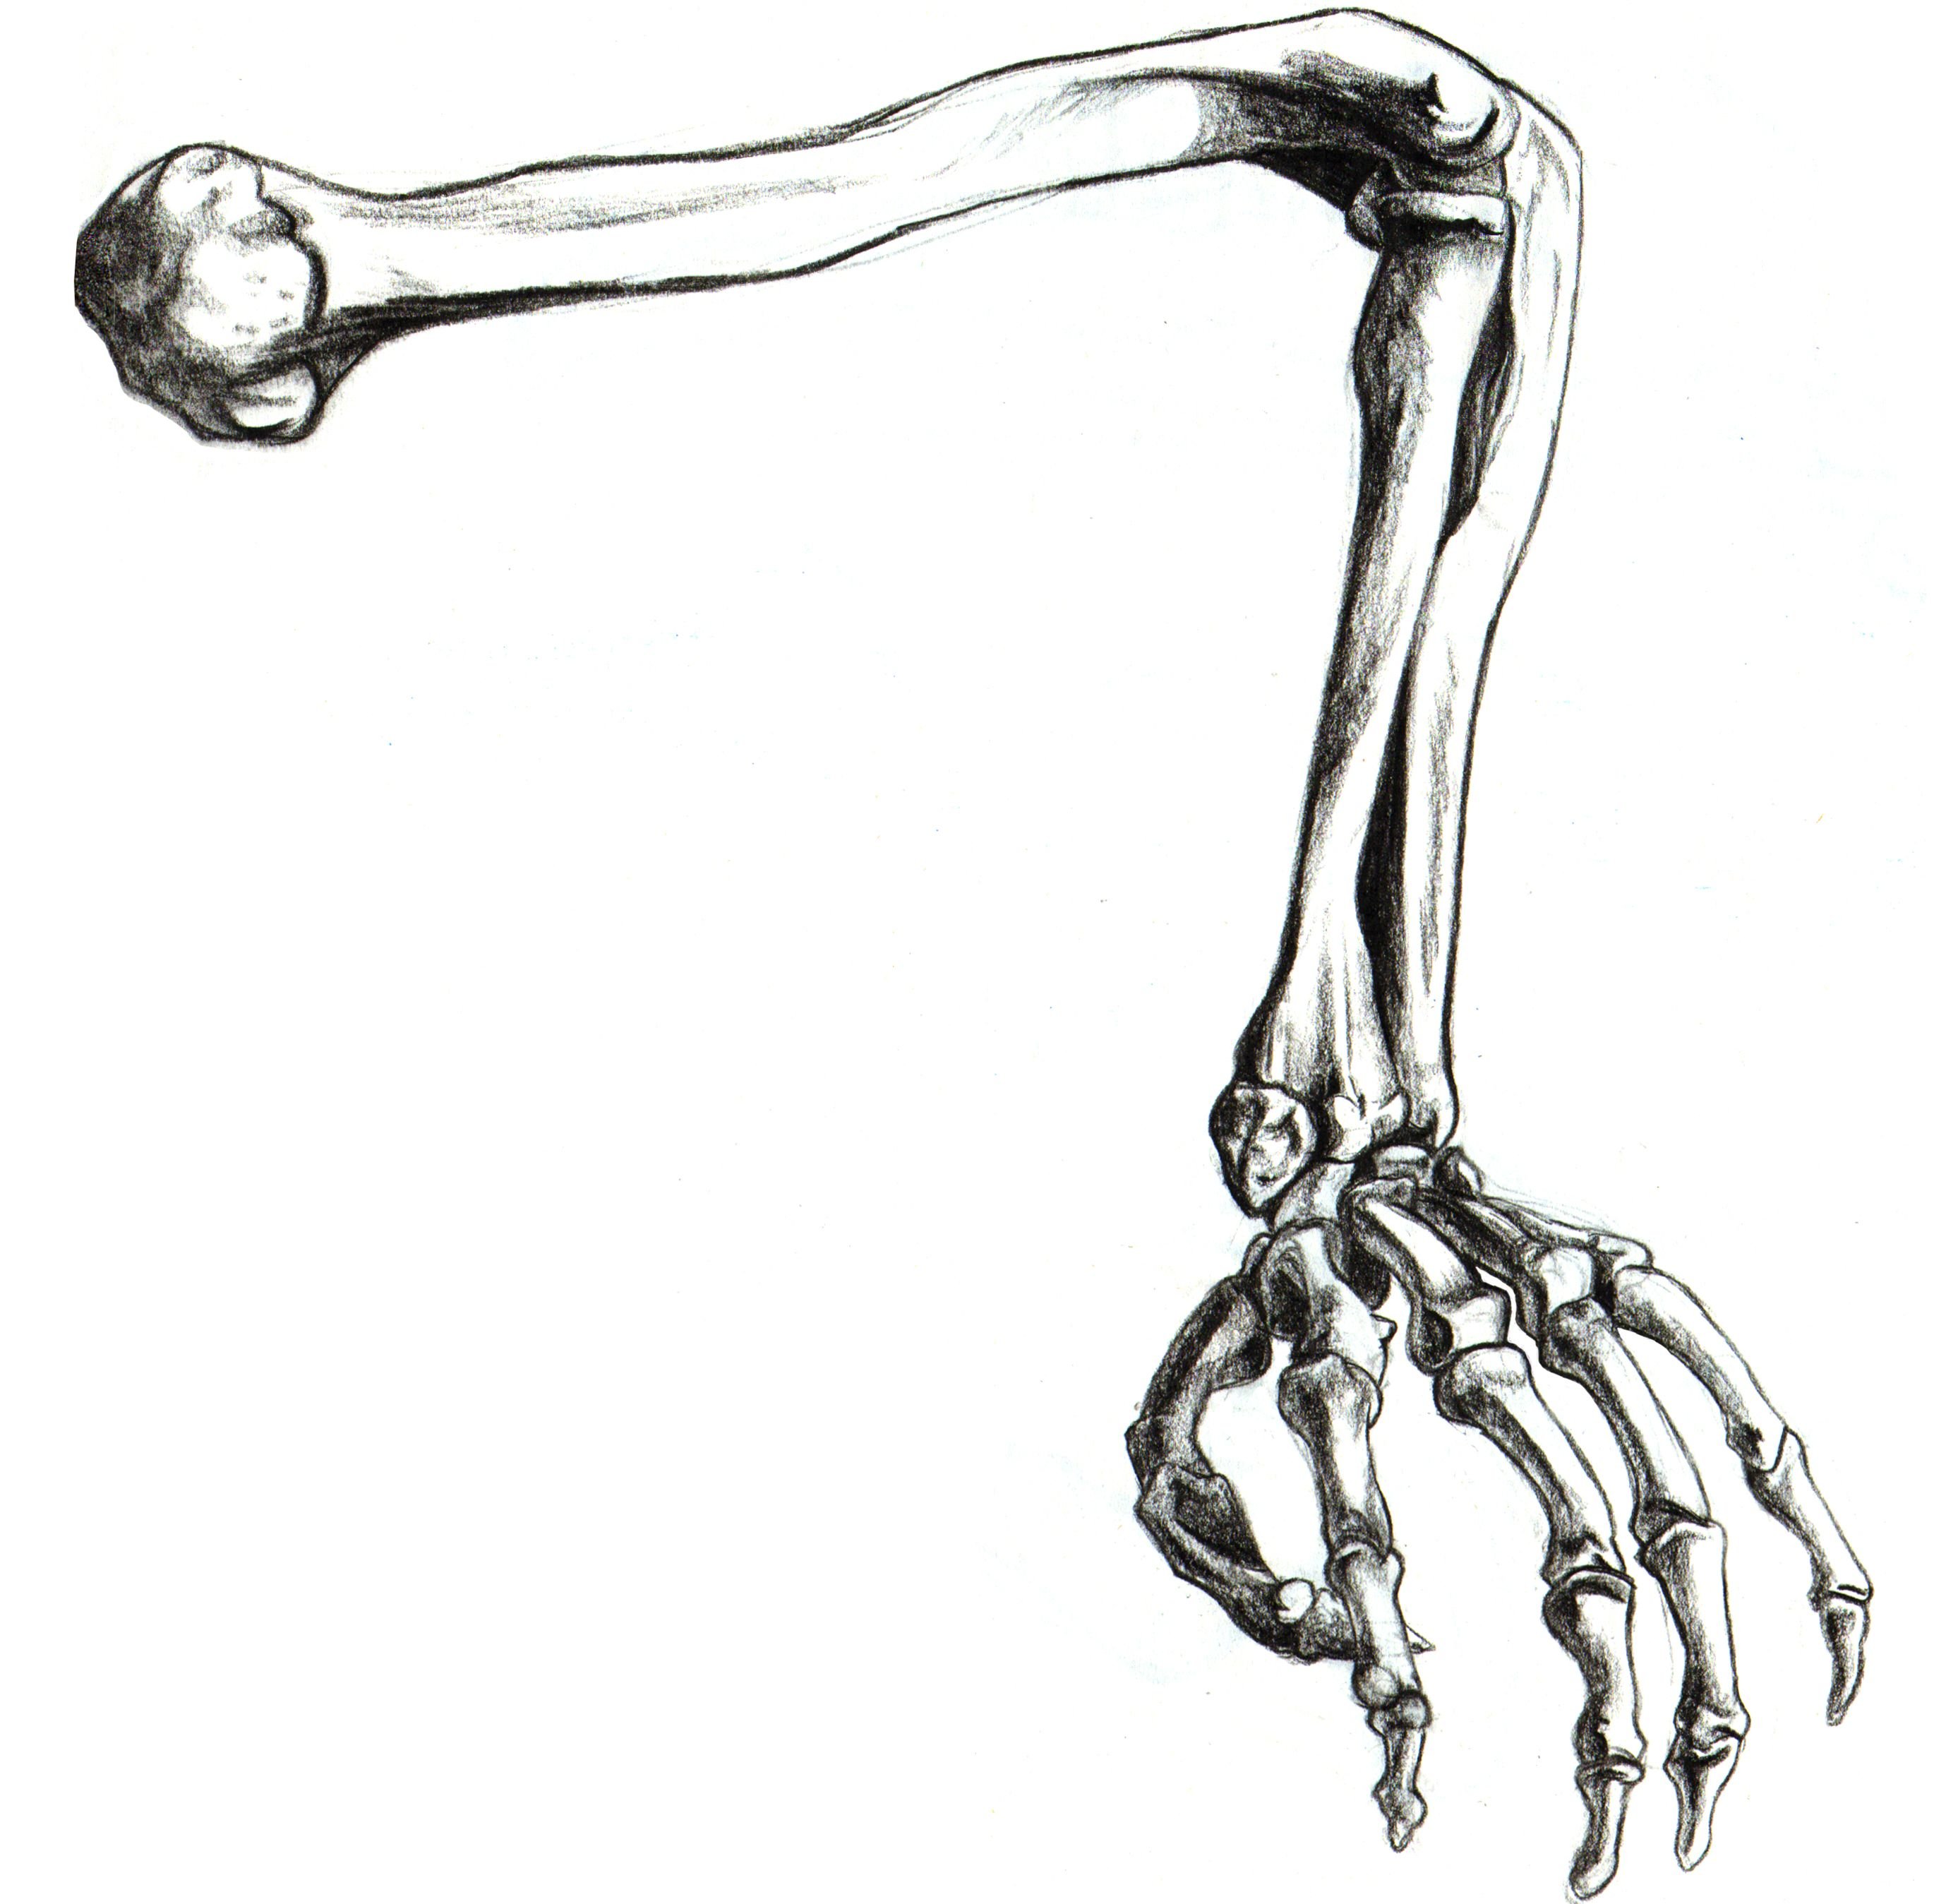 Hand bone